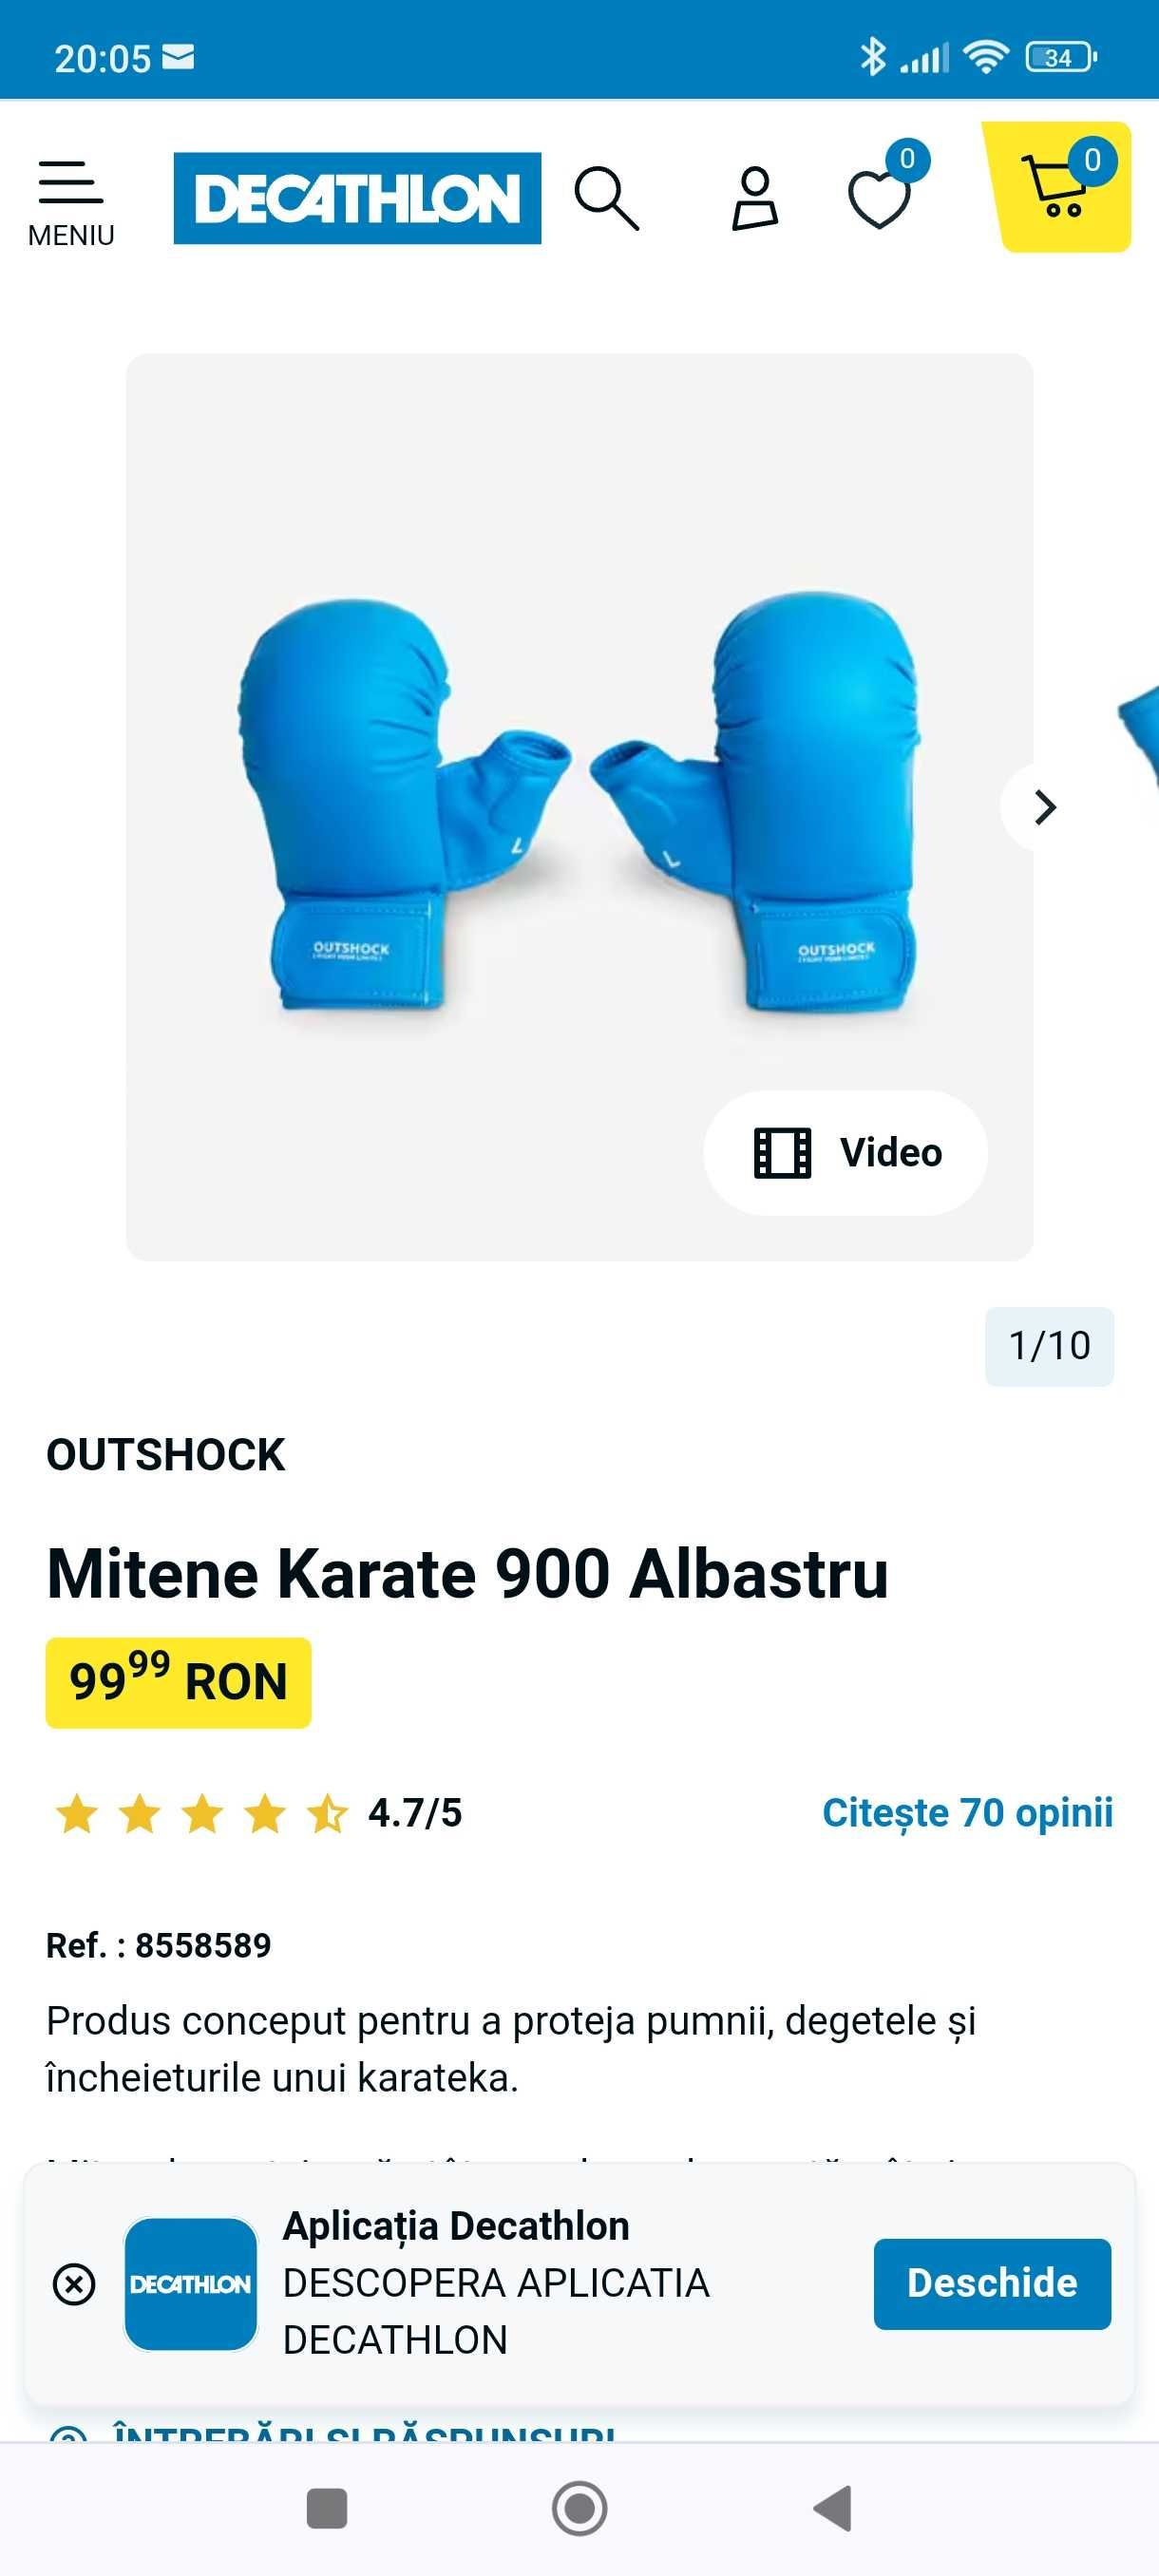 Mitene Karate albastru